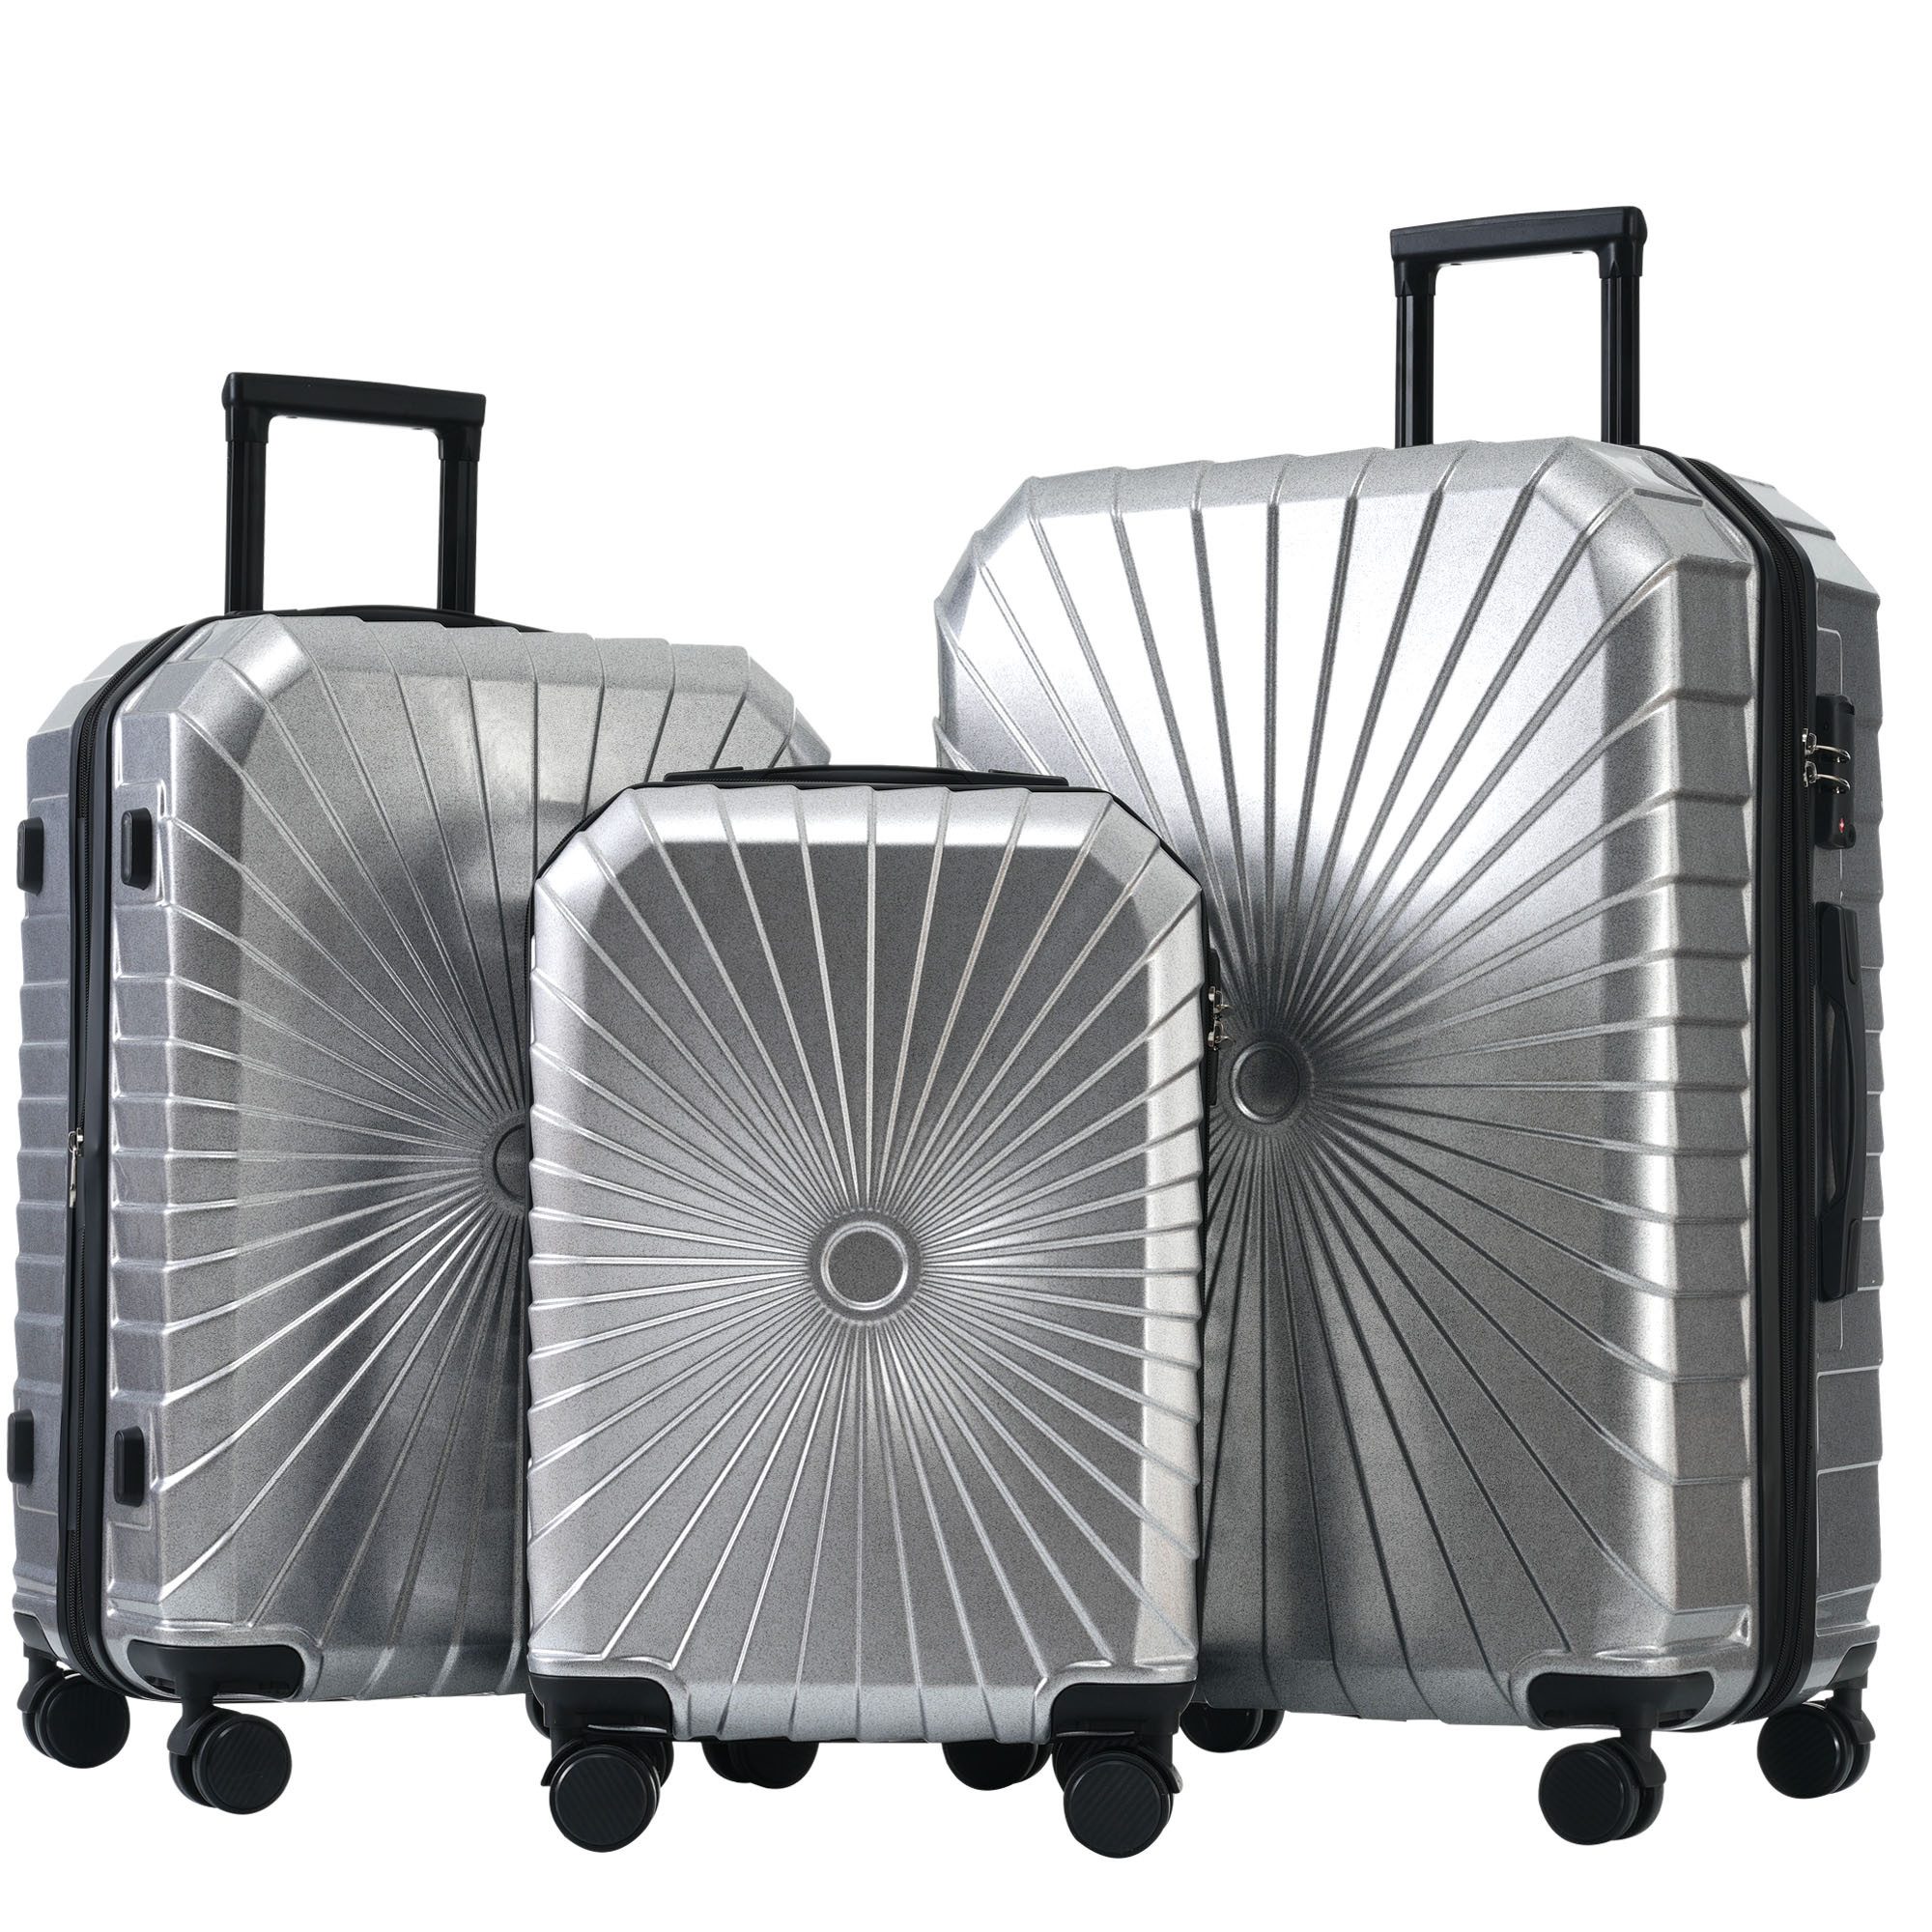 EXTSUD Hartschalen-Trolley M-L-XL 3-teiliges Koffer-Set aus hochwertigem PVC-Material,Robust, leicht und stilvoll für komfortables Reisen und sicheren Transport